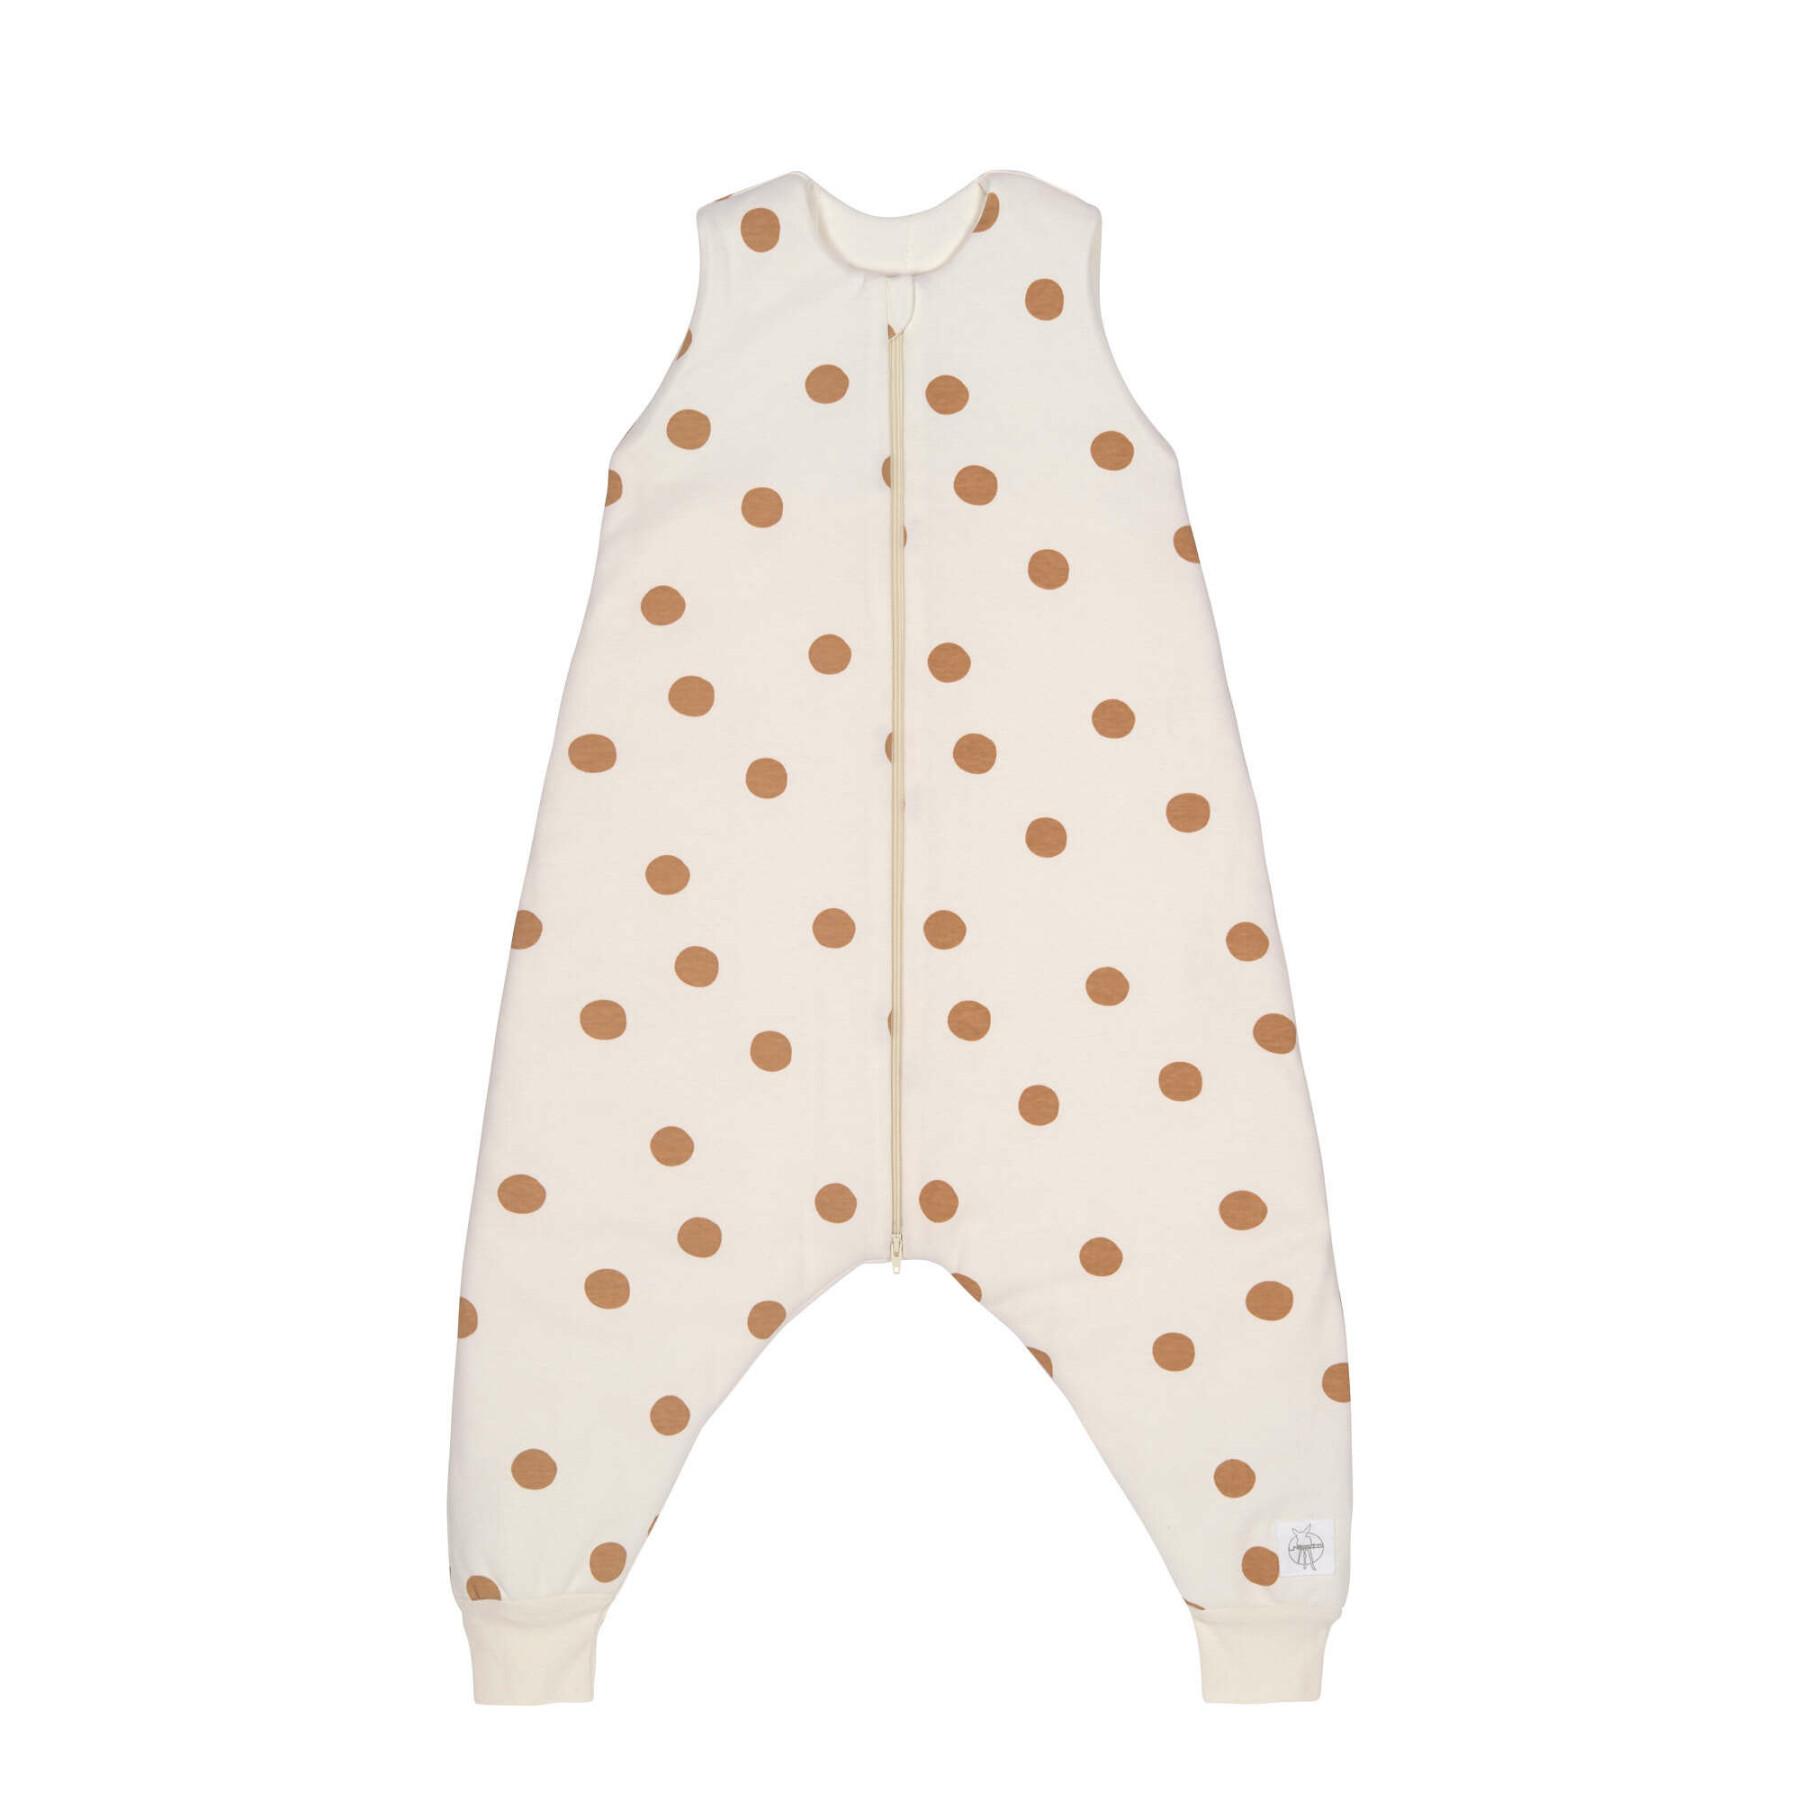 Fato de pijama para bebé Lässig Big Dots